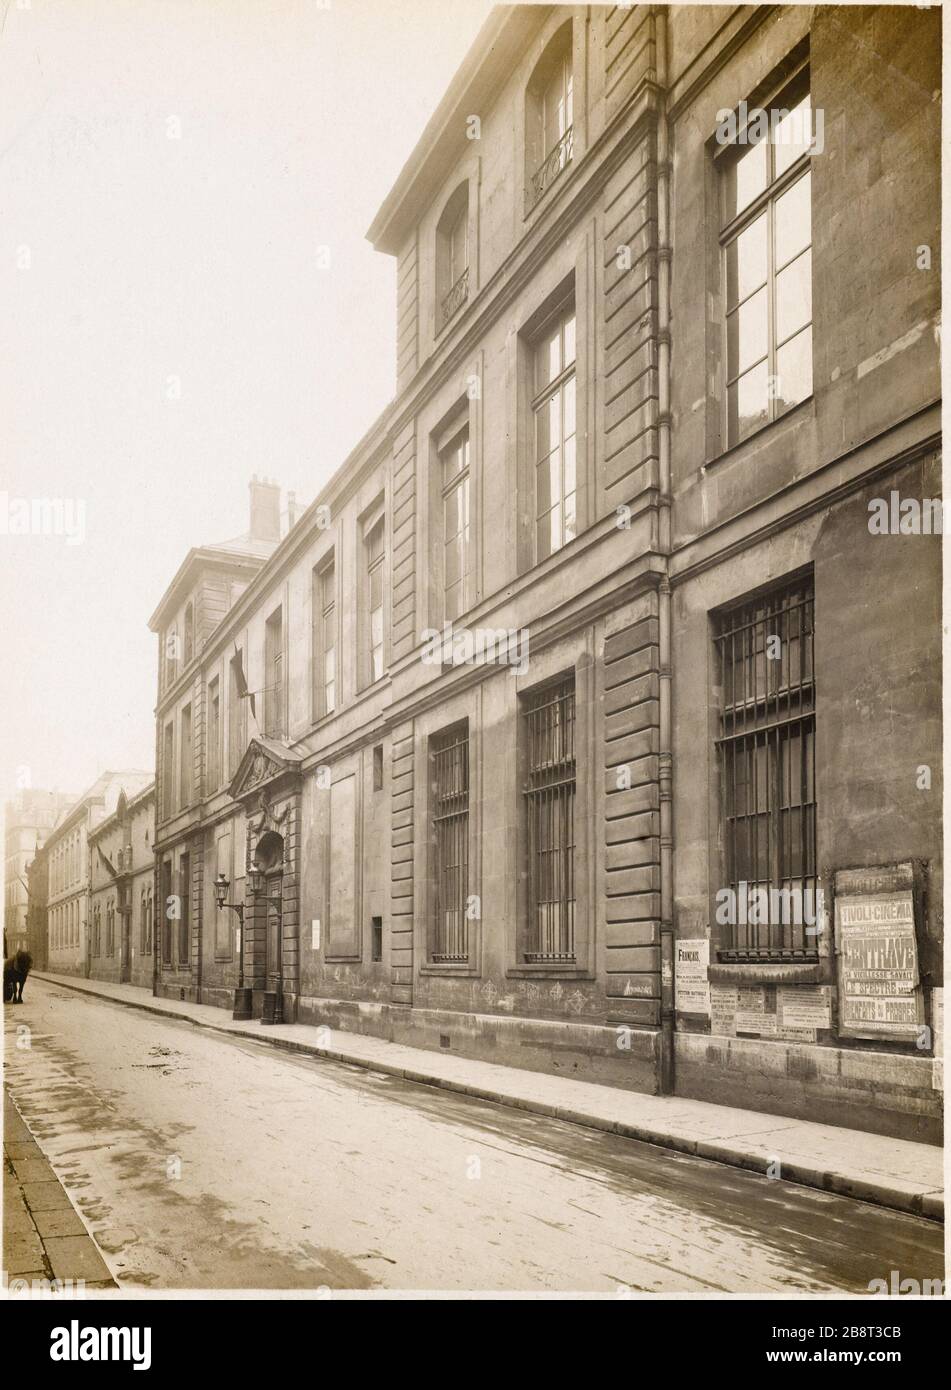 FAÇADE DE l'Hôtel le Peletier de Saint-Fargeau, 29 RUE de SÉVIGNÉ, Paris (IVème arr.). Photo de Charles Lansiaux (1855-1939), 19 janvier 1917. Paris, musée Carnavalet. Banque D'Images